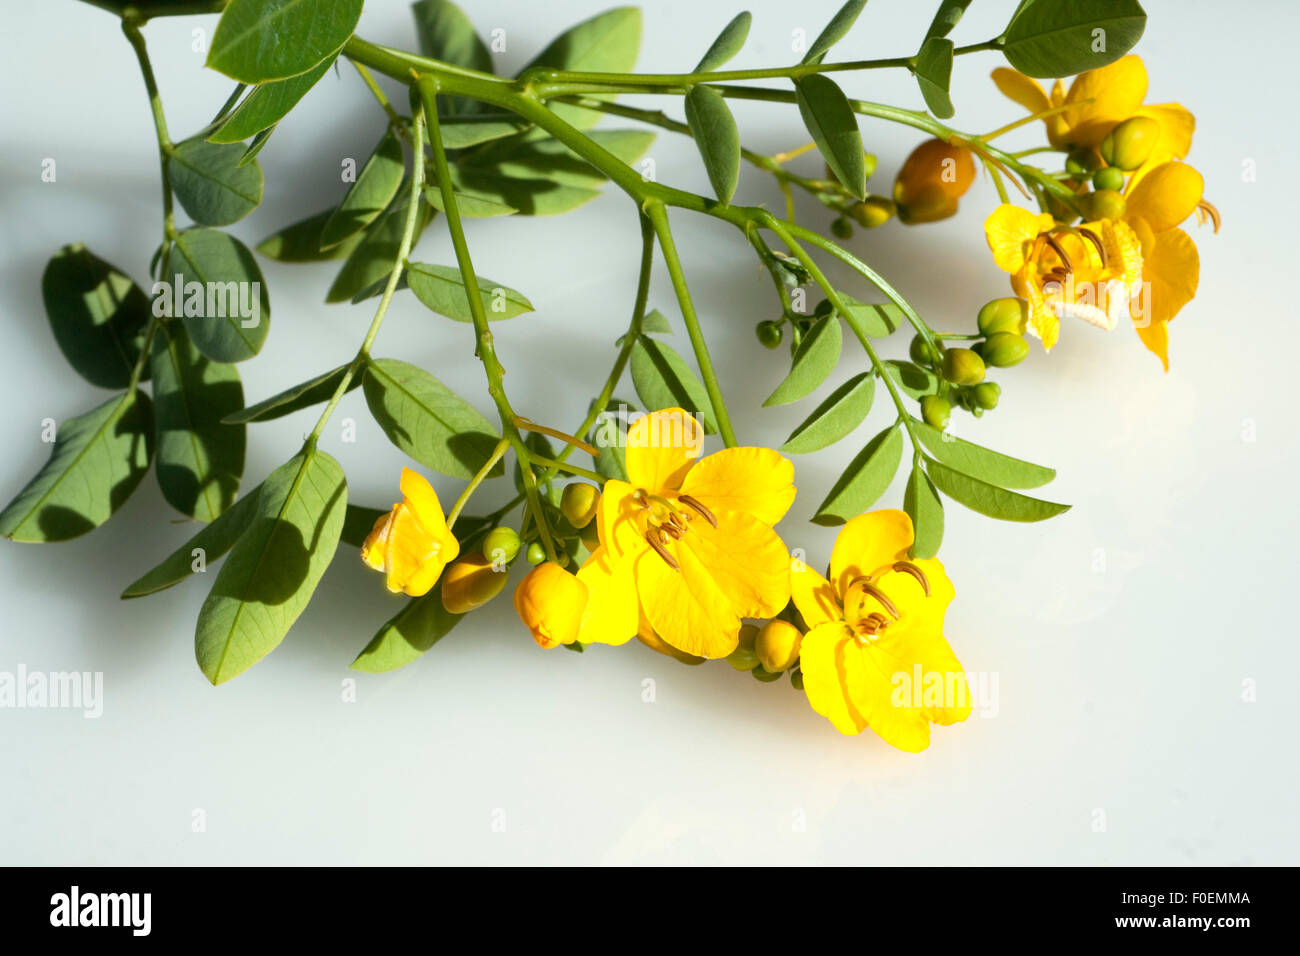 Chinesische Senna, Cassia senna, Stock Photo